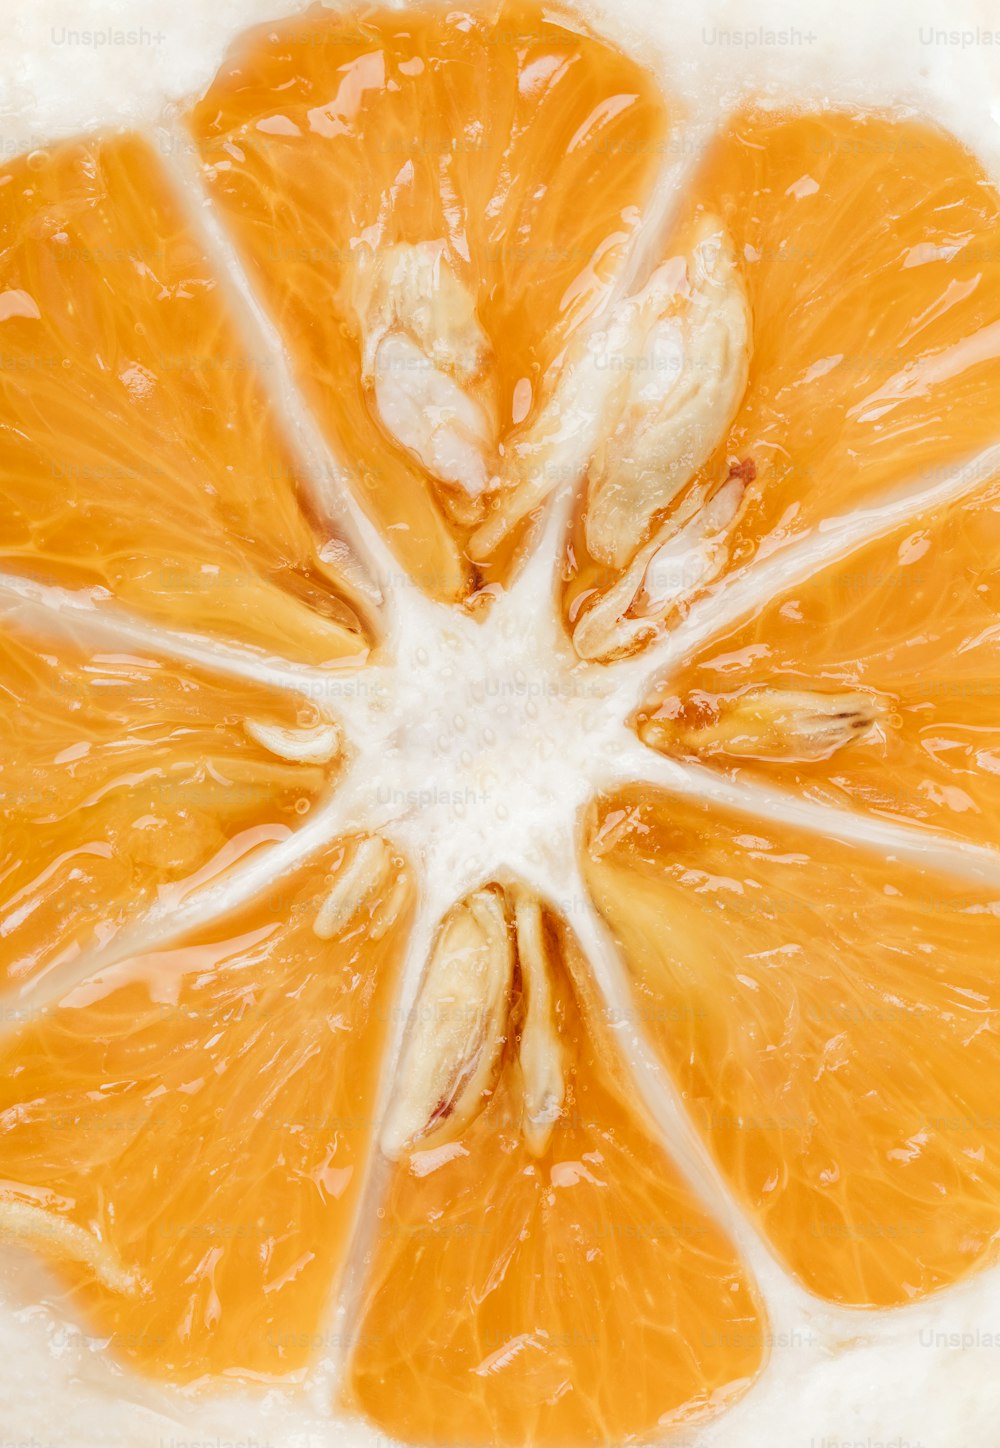 una naranja cortada por la mitad sobre una superficie blanca